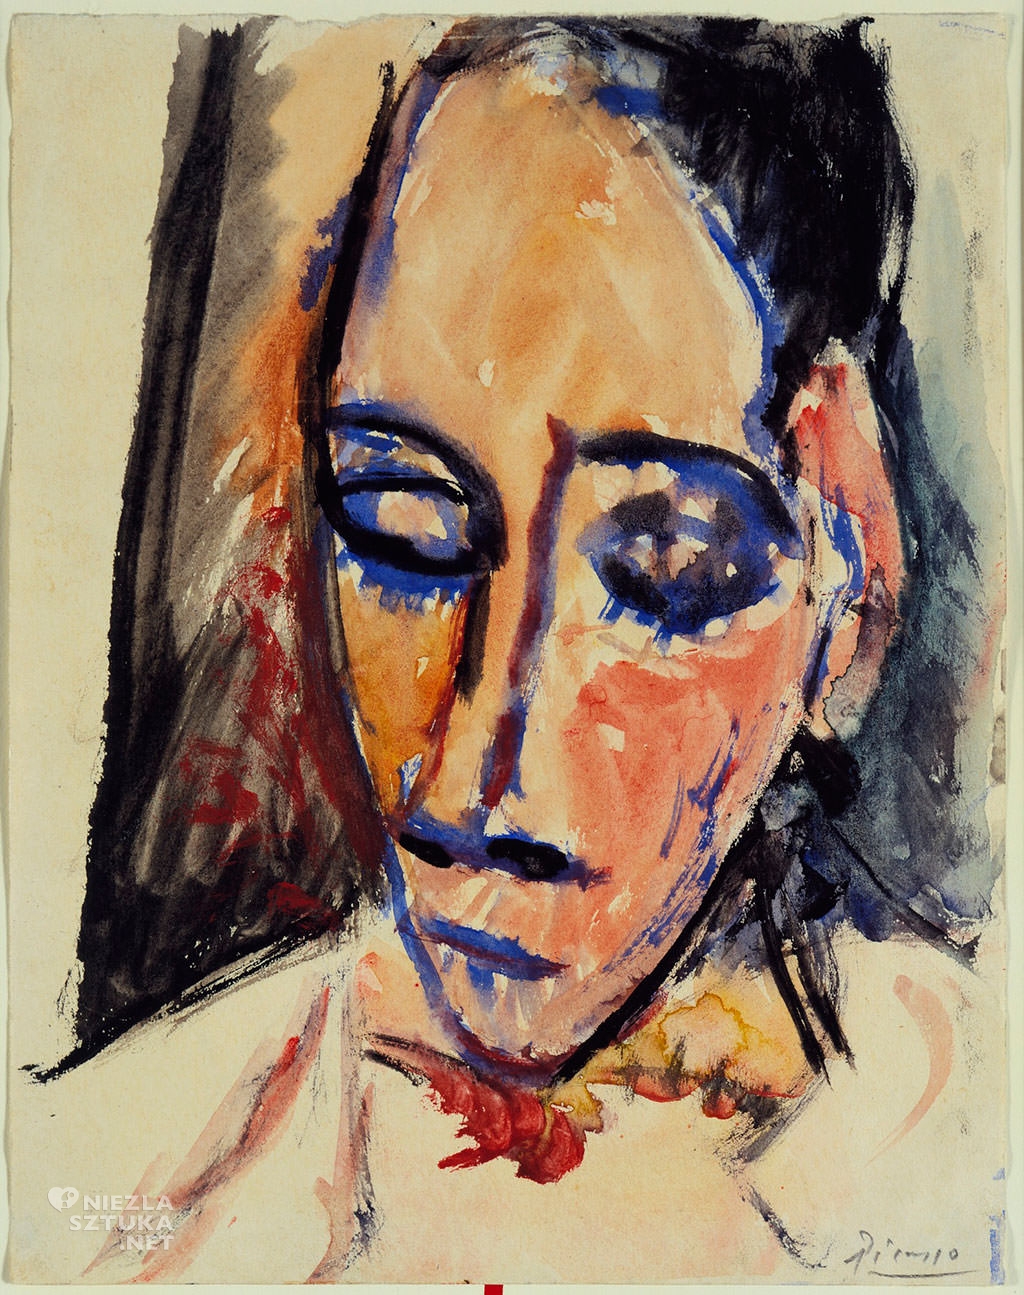 Pablo Picasso, Szkic do obrazu Panny z Awinionu, 1907, akwarela, papier, Museum of Modern Art, Nowy Jork, Niezła sztuka